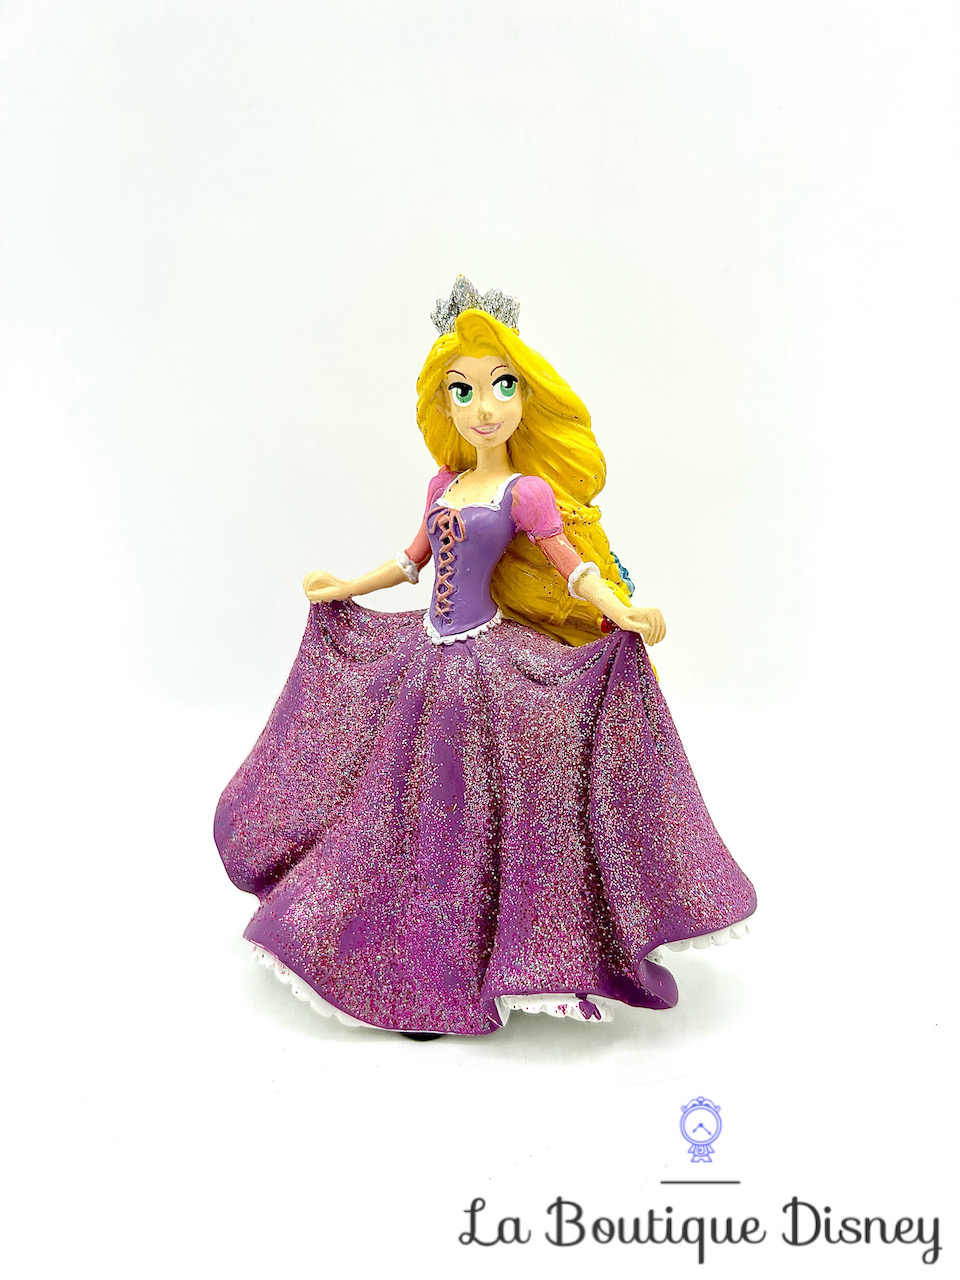 Figurine résine Raiponce Disneyland Paris Disney princesse paillettes robe violet 10 cm